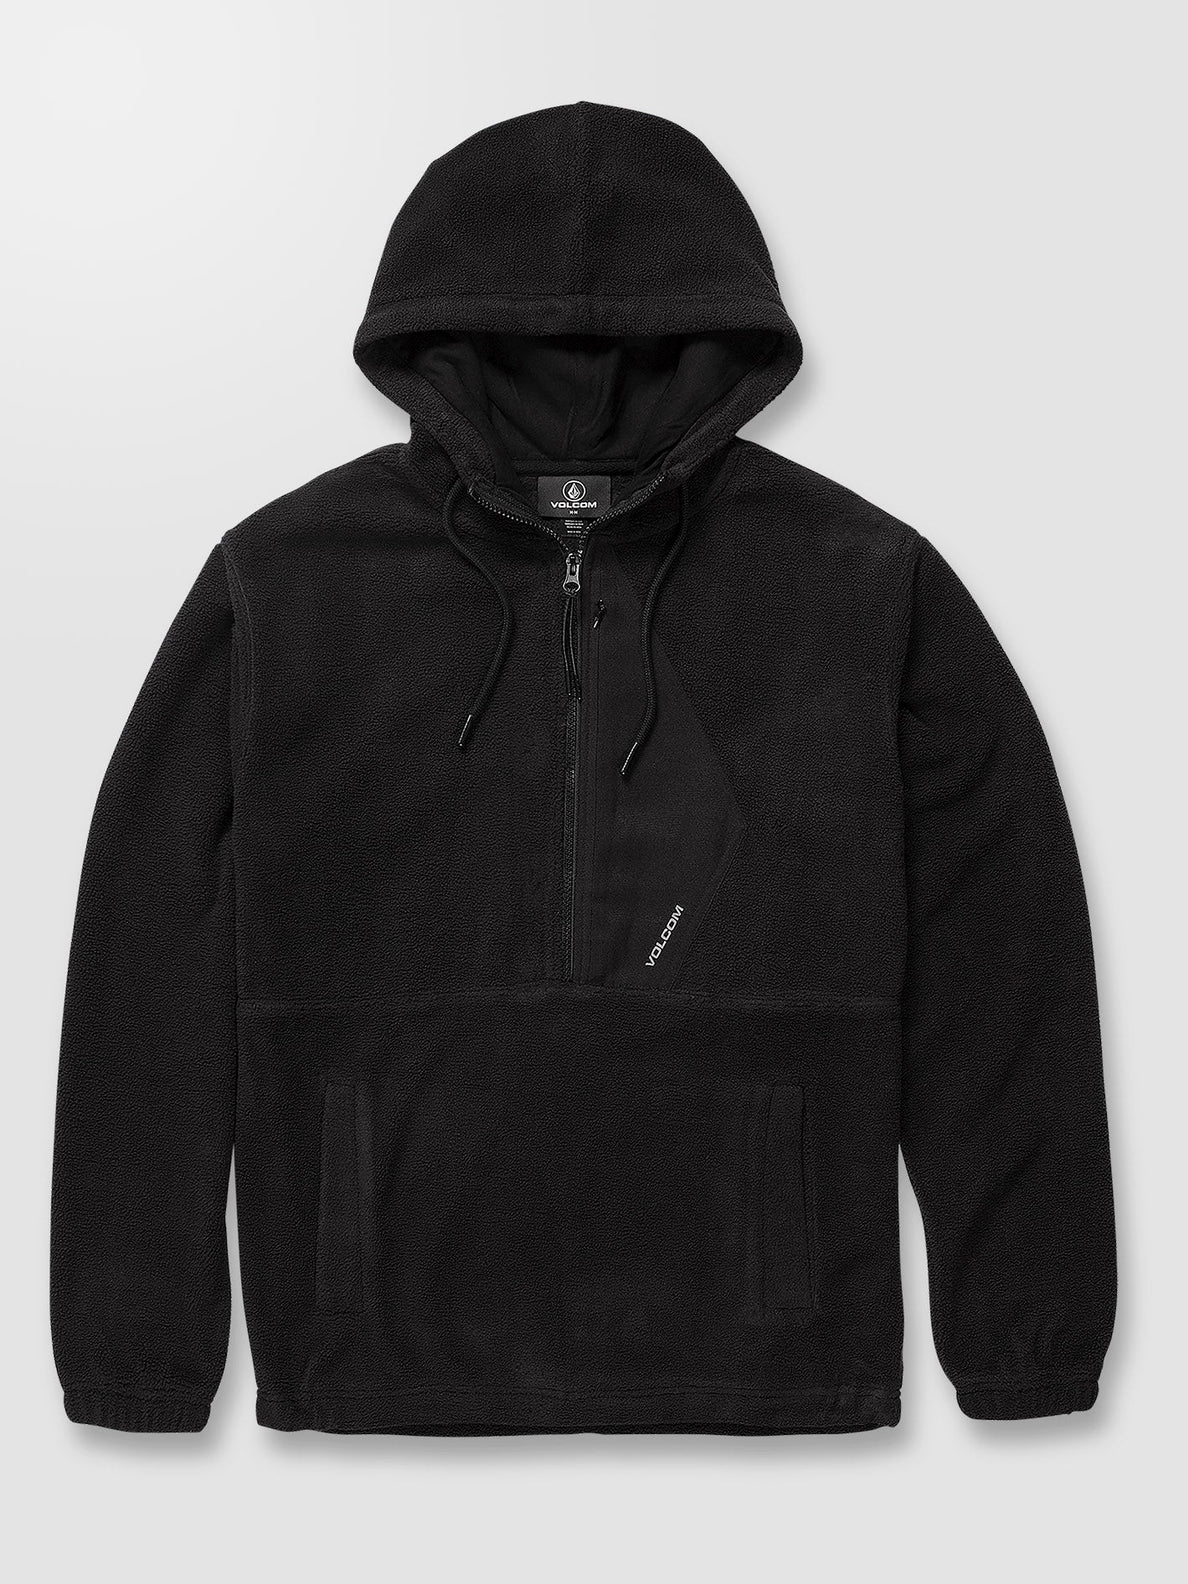 Unerstand Half Zip Sweatshirt - BLACK (A4832200_BLK) [10]